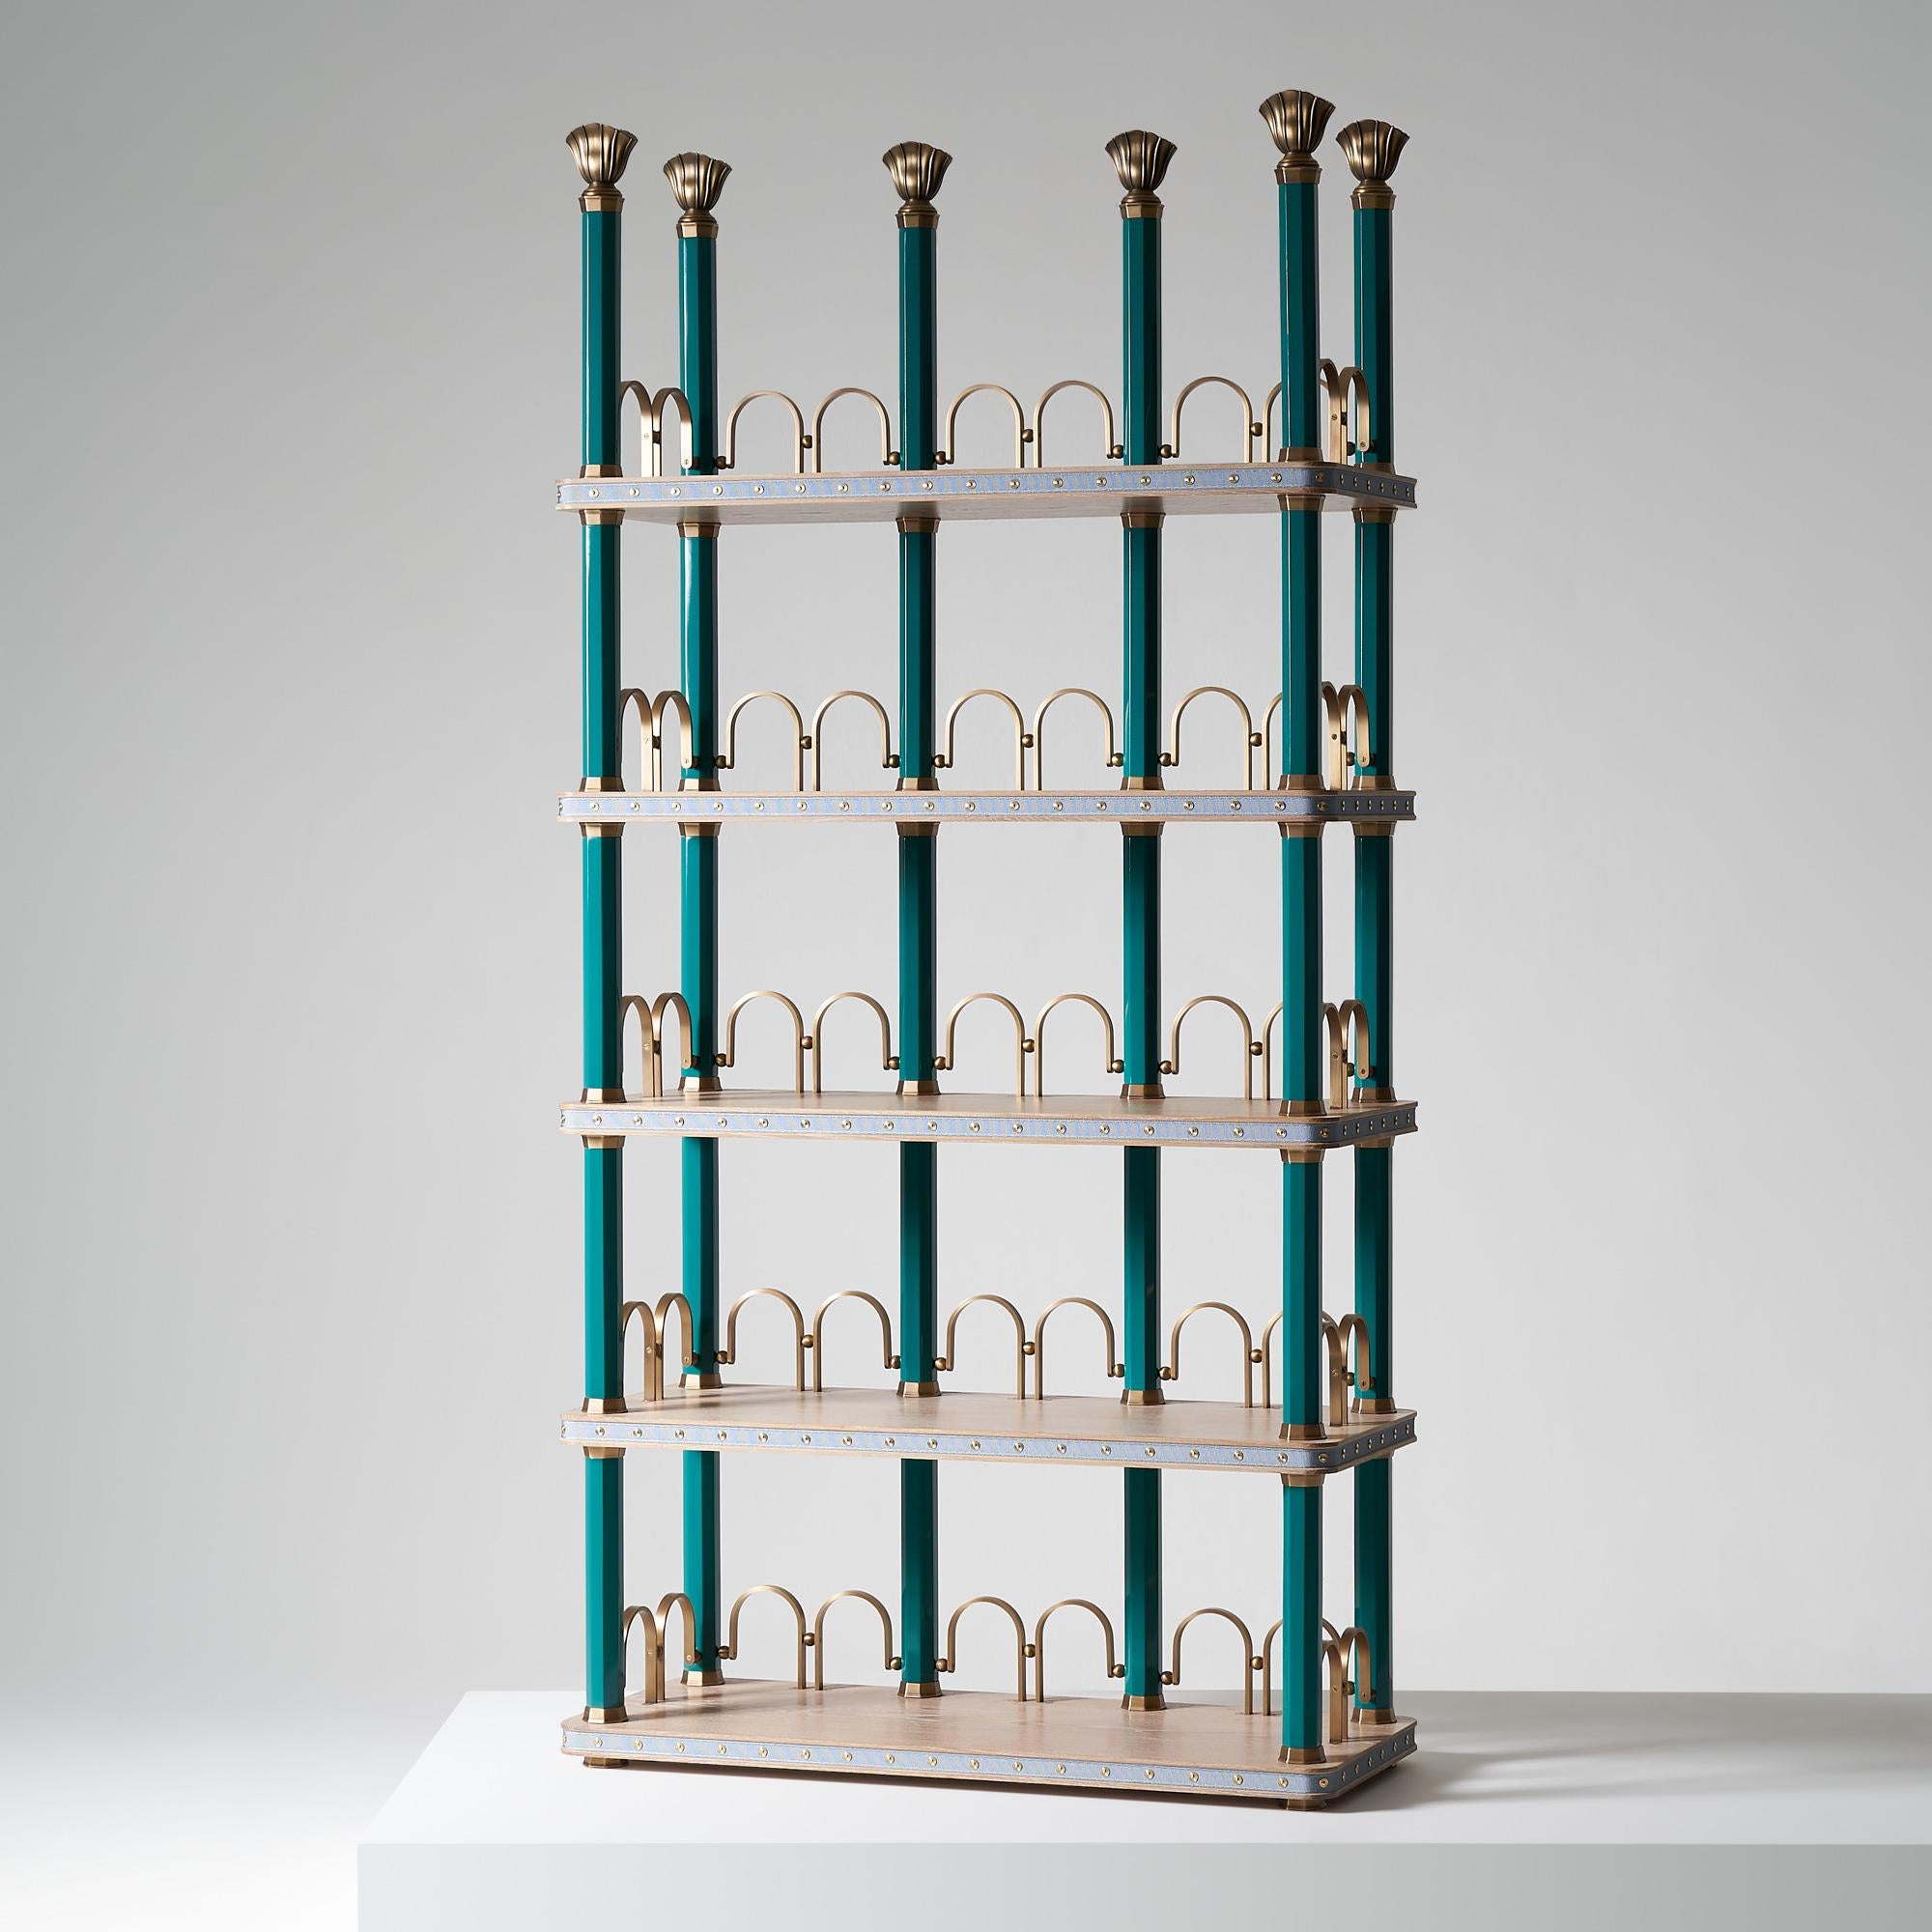 And objects, ein von Martin Brudnizki und Nick Jeanes gegründetes Studio für Produktdesign mit Sitz in London.

Das prächtige Hambledon-Bücherregal ist hoch und eine schöne Ergänzung für Ihr Zuhause. Gekälkte Regalböden aus massiver Eiche mit